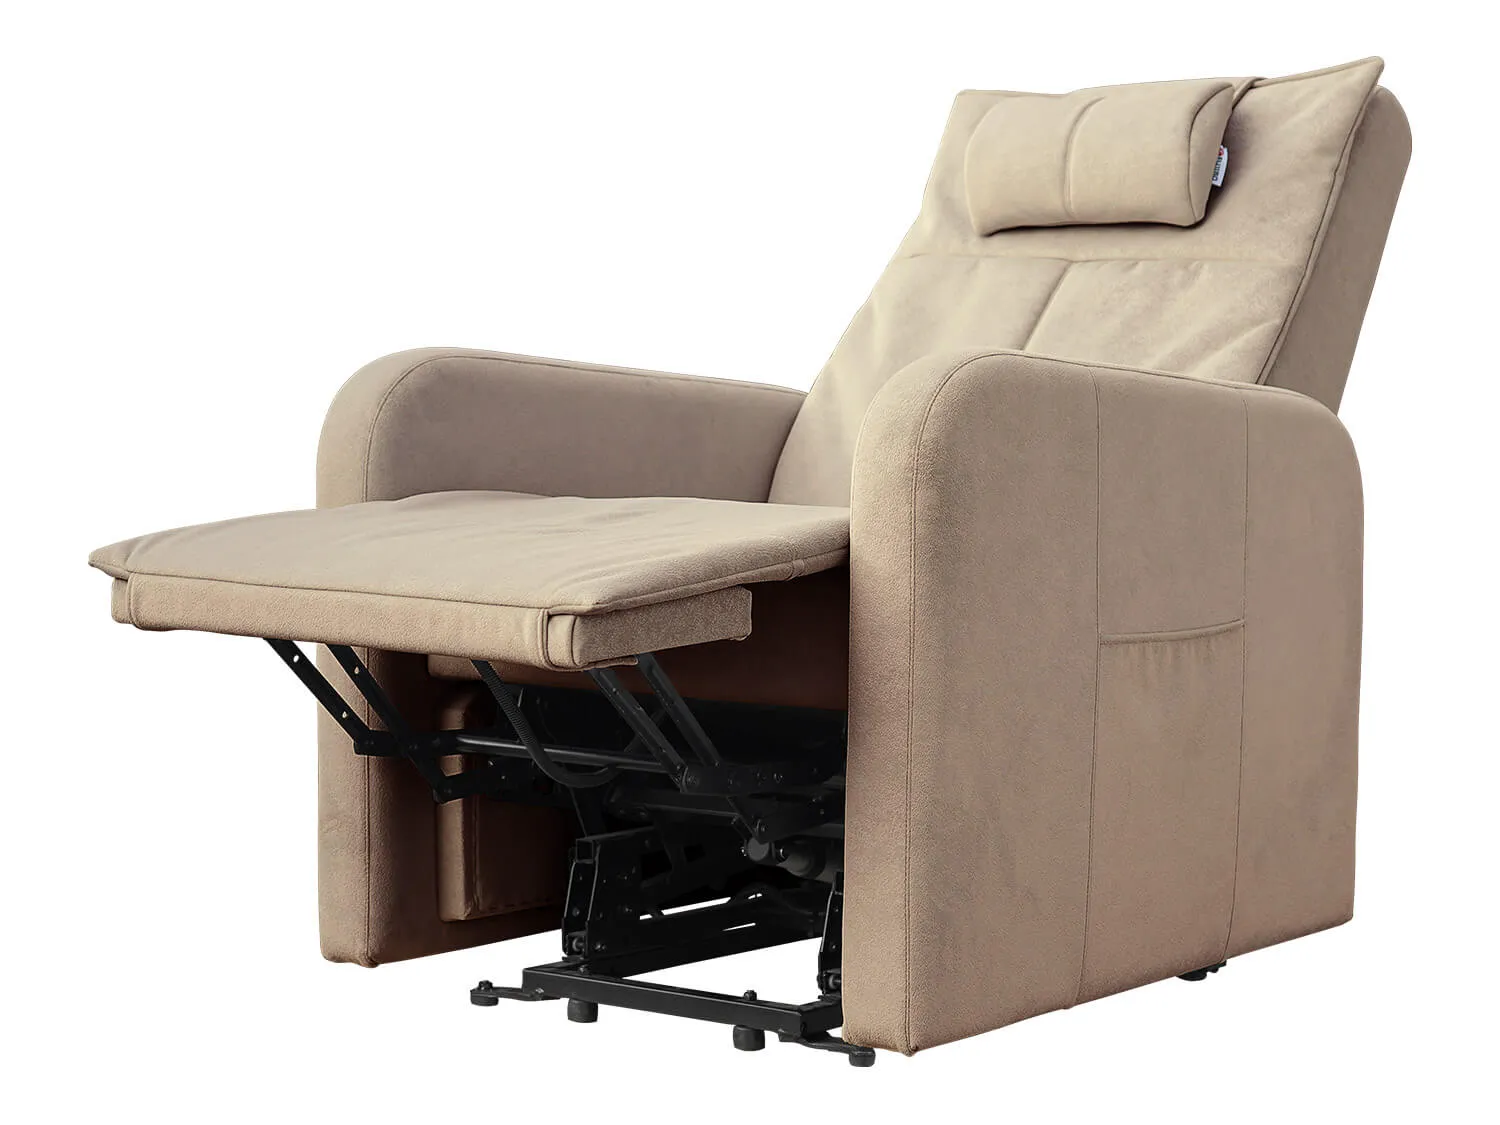 Кресло реклайнер с подъемом FUJIMO LIFT CHAIR F3005 FLWK цвет на заказ - 4 